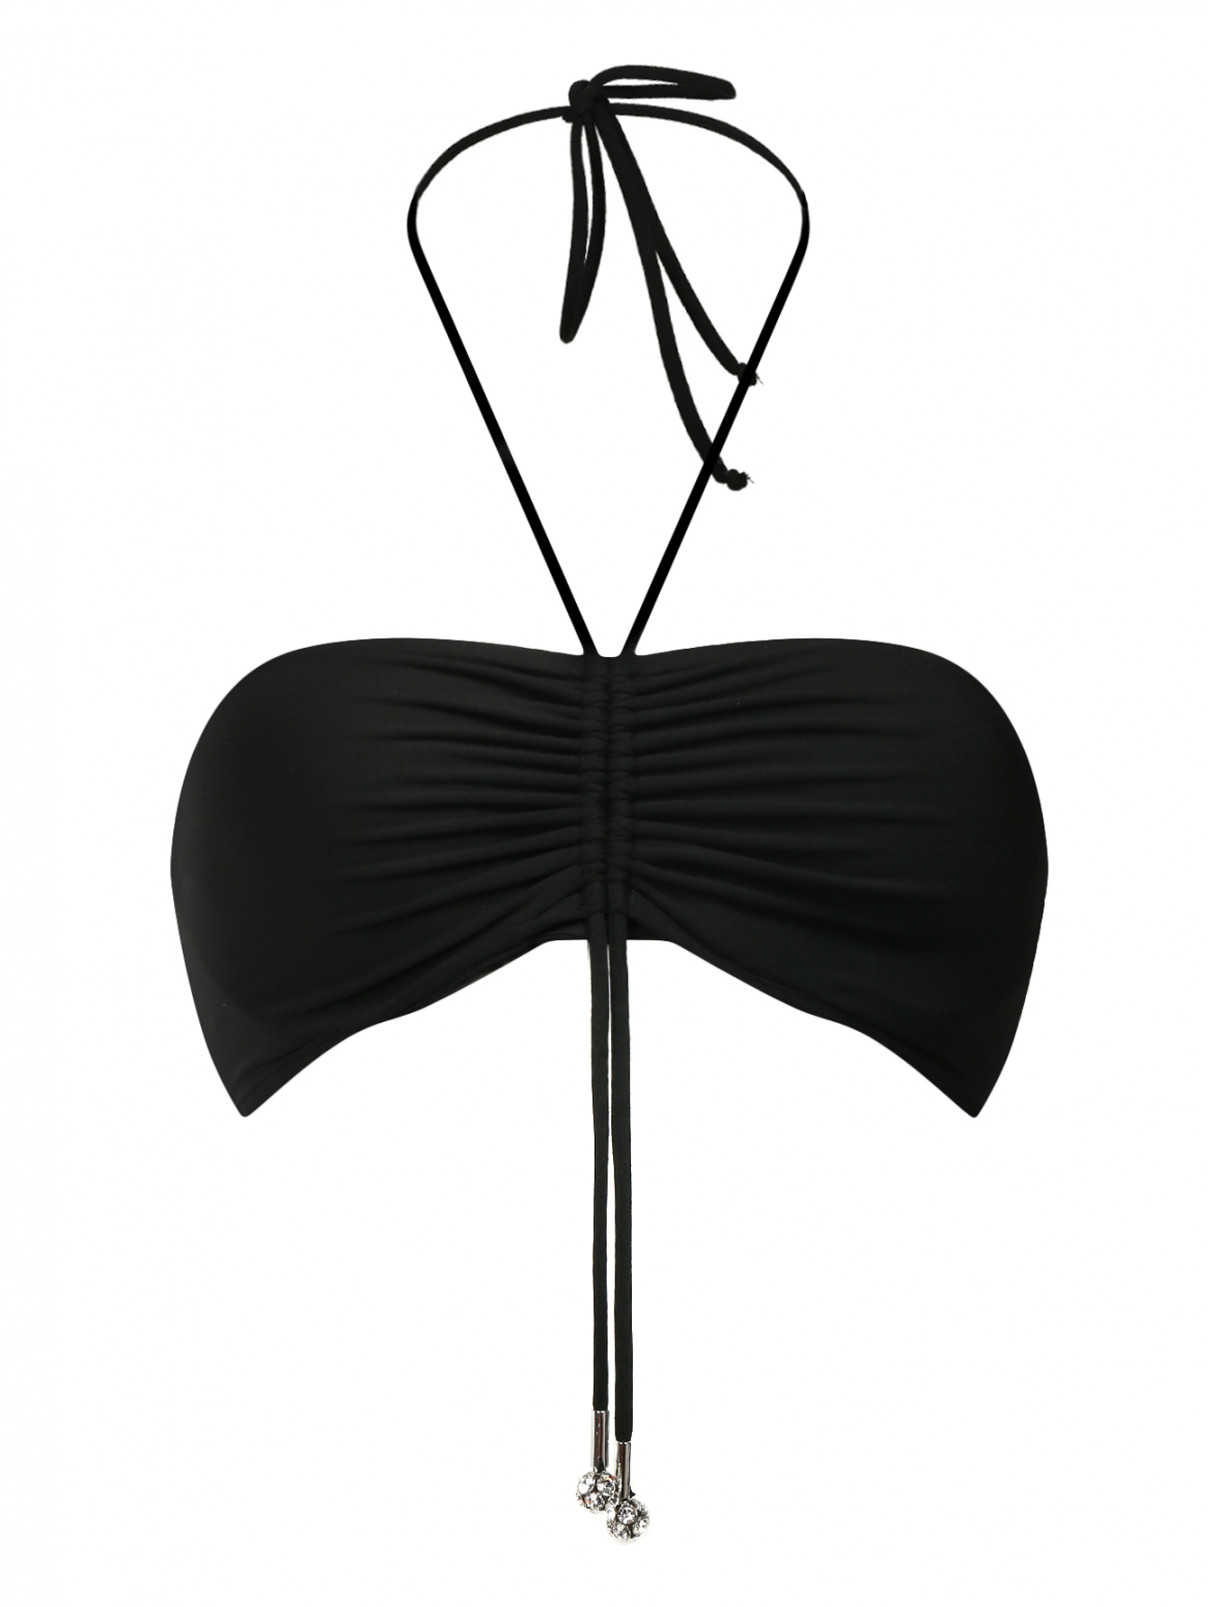 Купальный бюстгальтер-бандо с драпировкой La Perla  –  Общий вид  – Цвет:  Черный